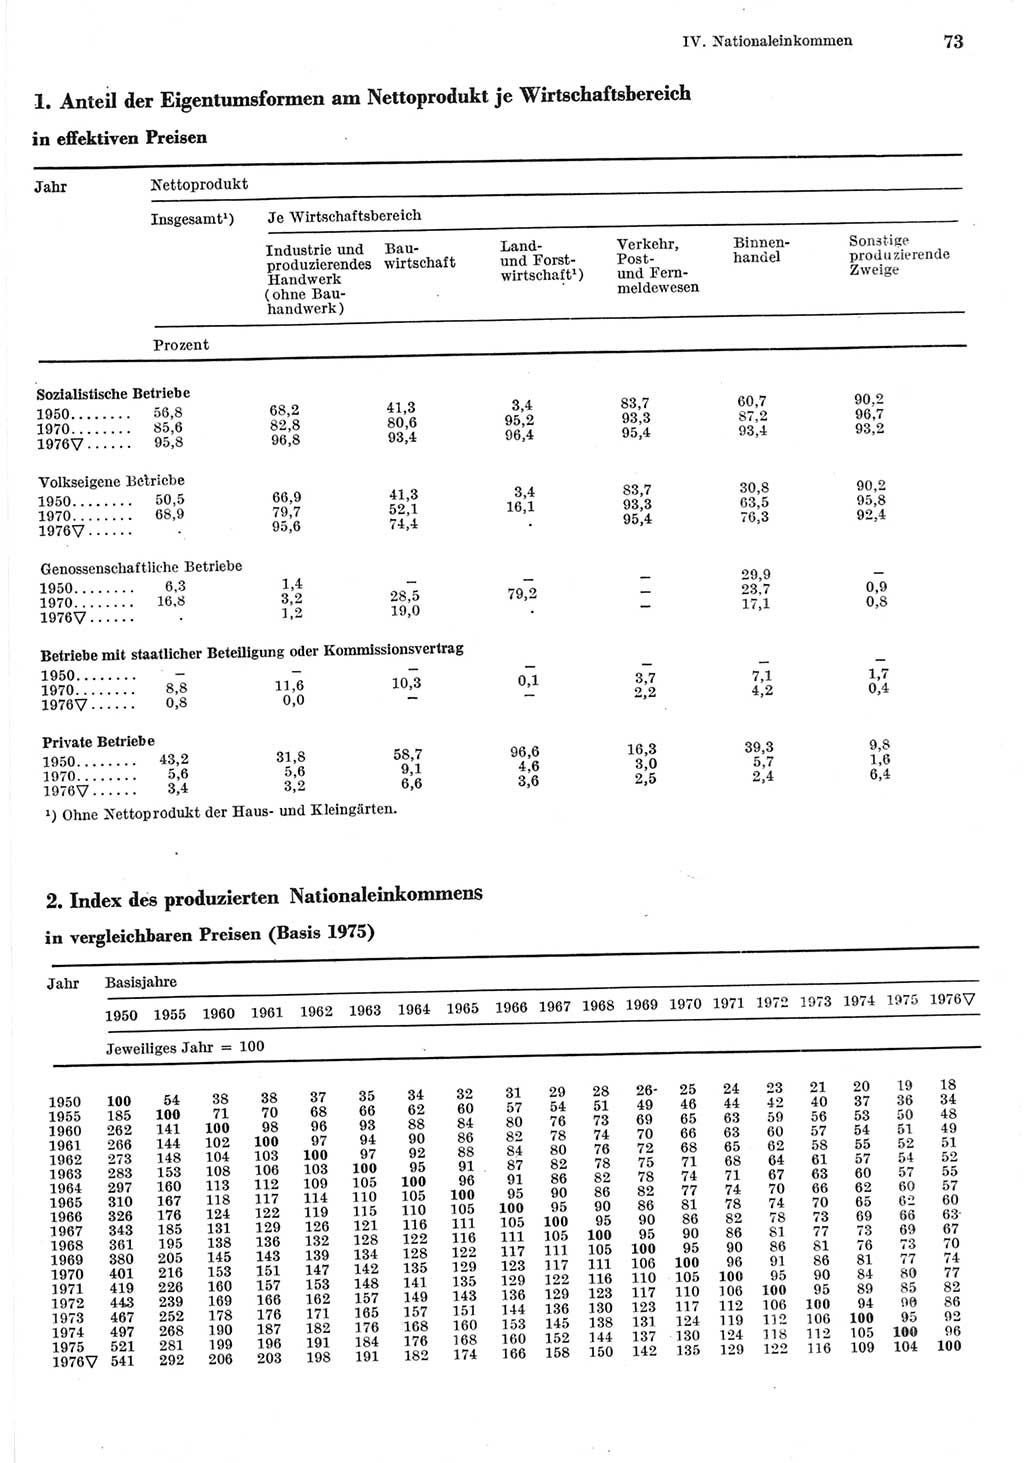 Statistisches Jahrbuch der Deutschen Demokratischen Republik (DDR) 1977, Seite 73 (Stat. Jb. DDR 1977, S. 73)